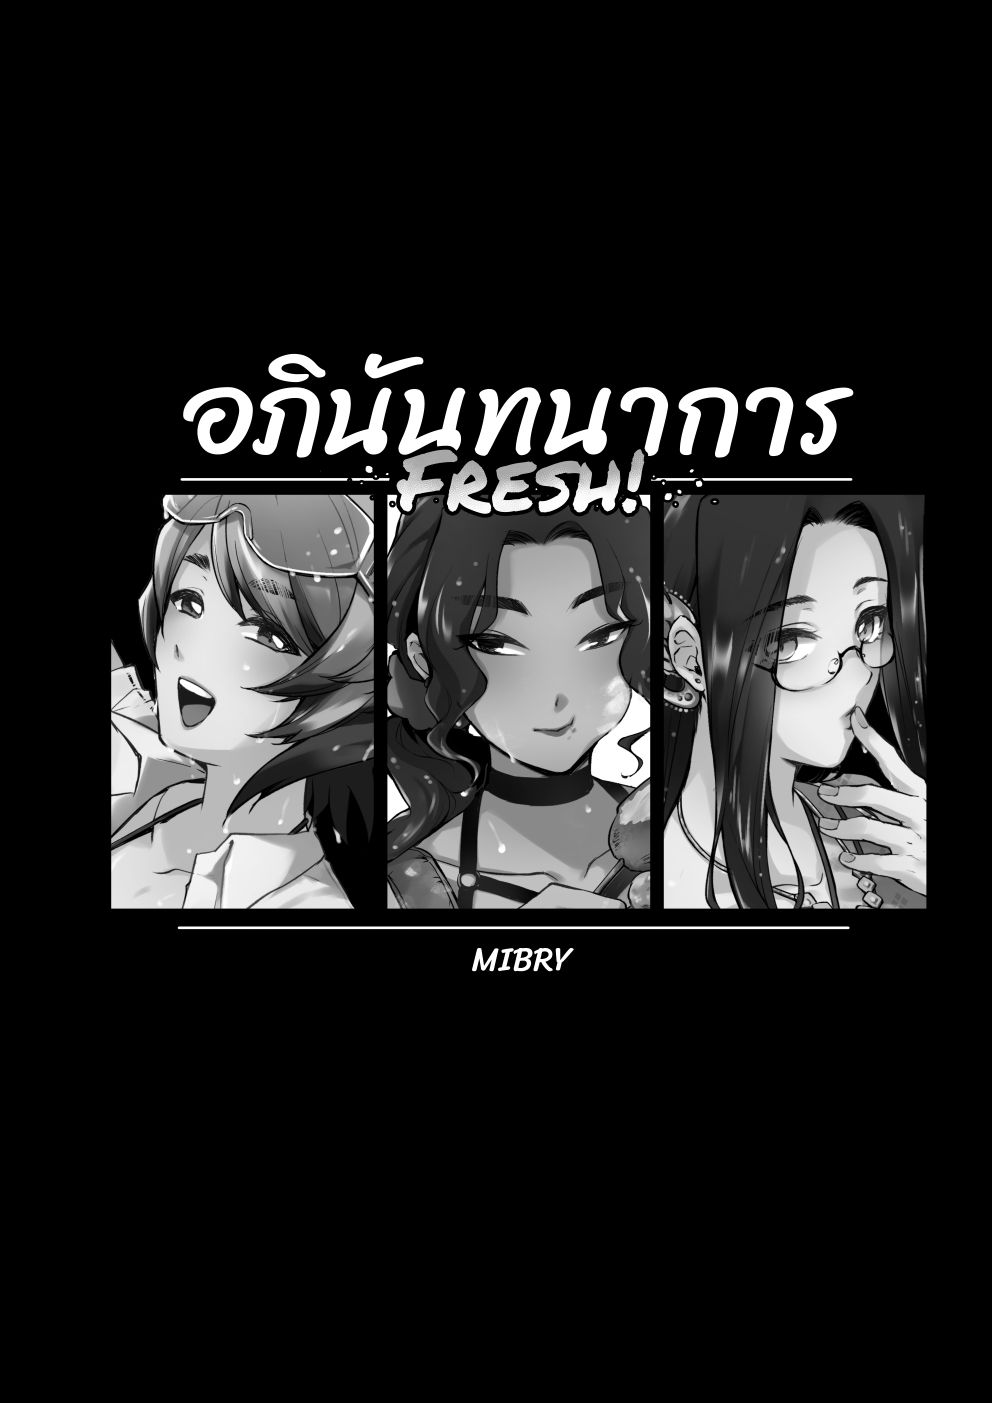 [Pixiv] MIBRY☆ (2367541) [Pixiv] MIBRY☆ (2367541) 147